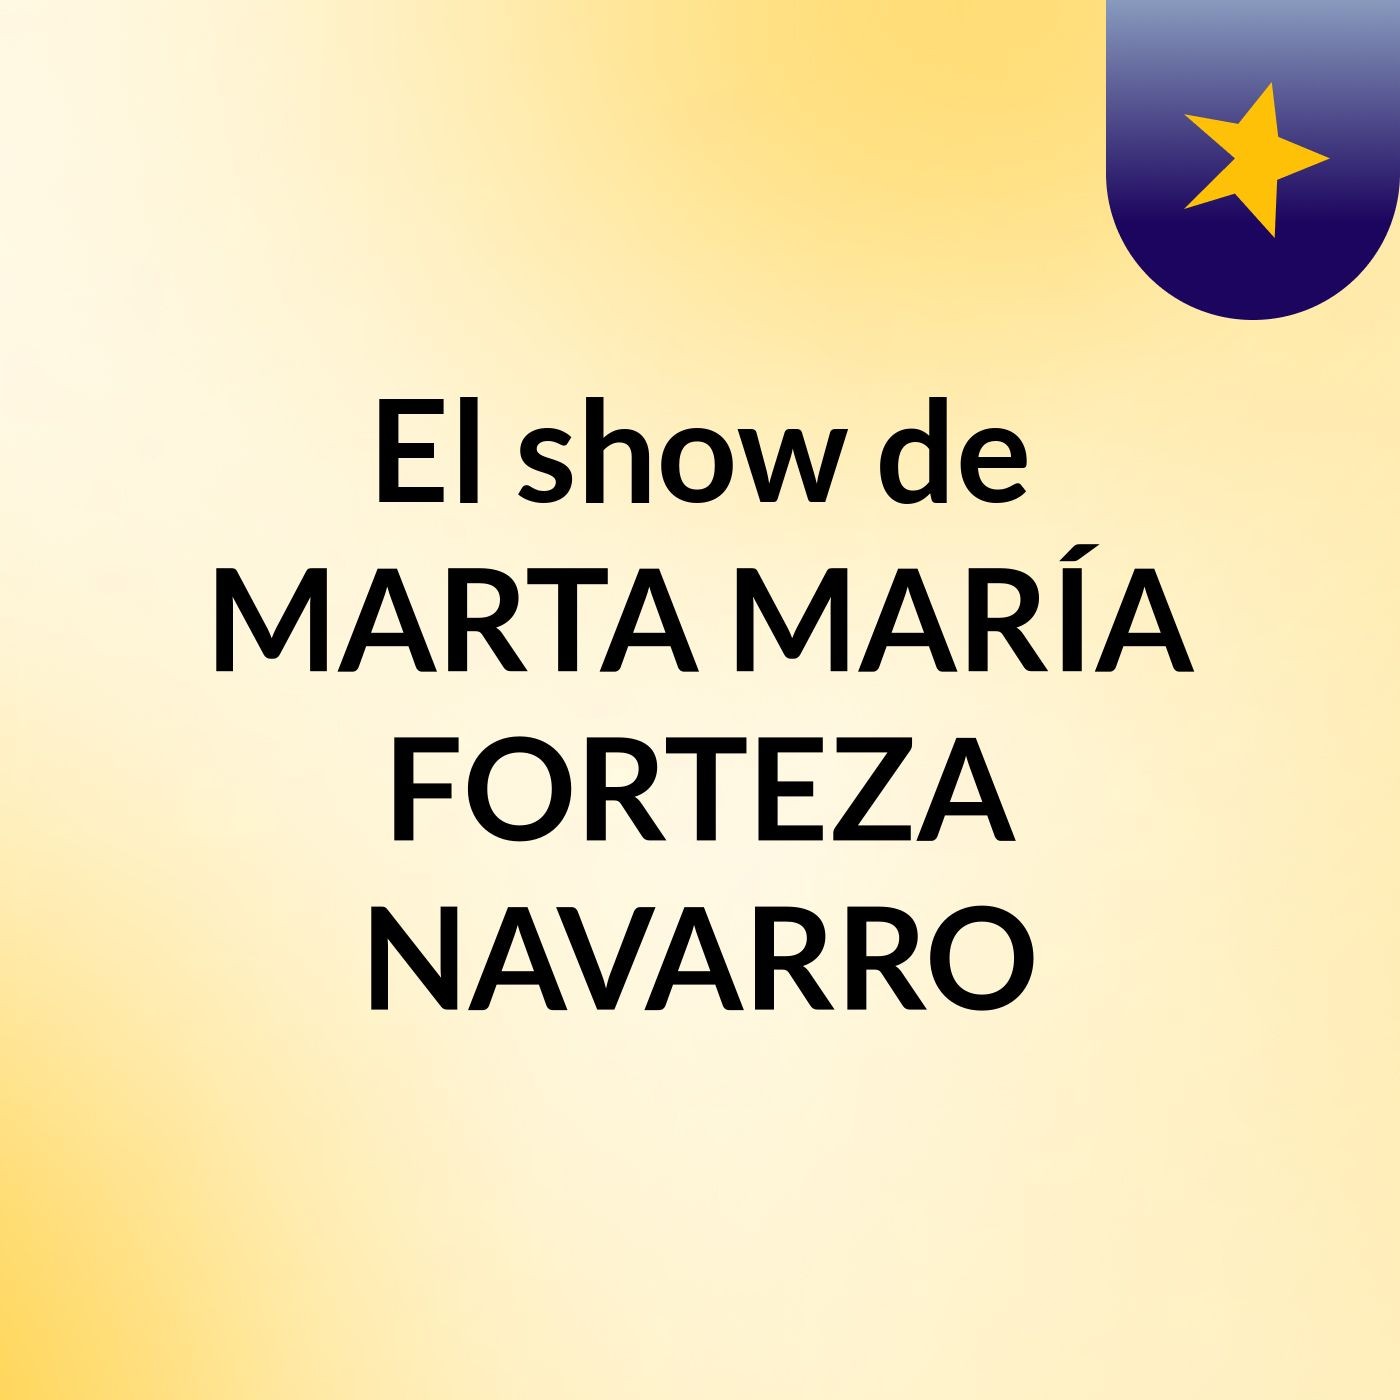 El show de MARTA MARÍA FORTEZA NAVARRO